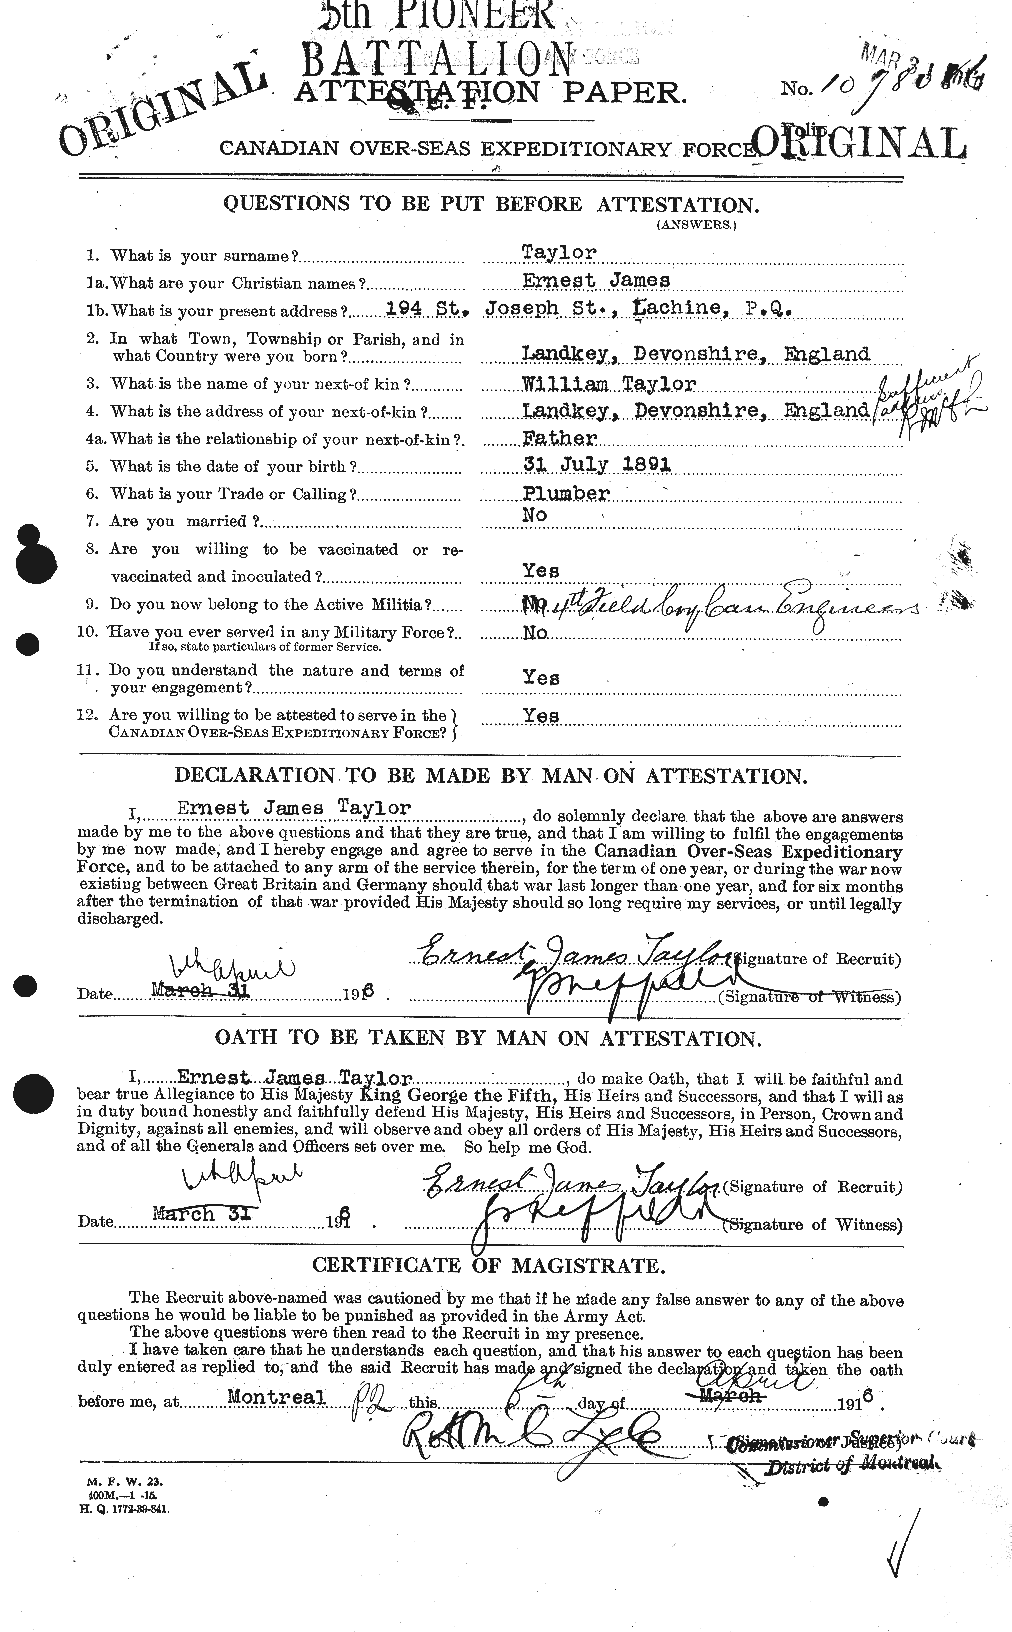 Dossiers du Personnel de la Première Guerre mondiale - CEC 627395a